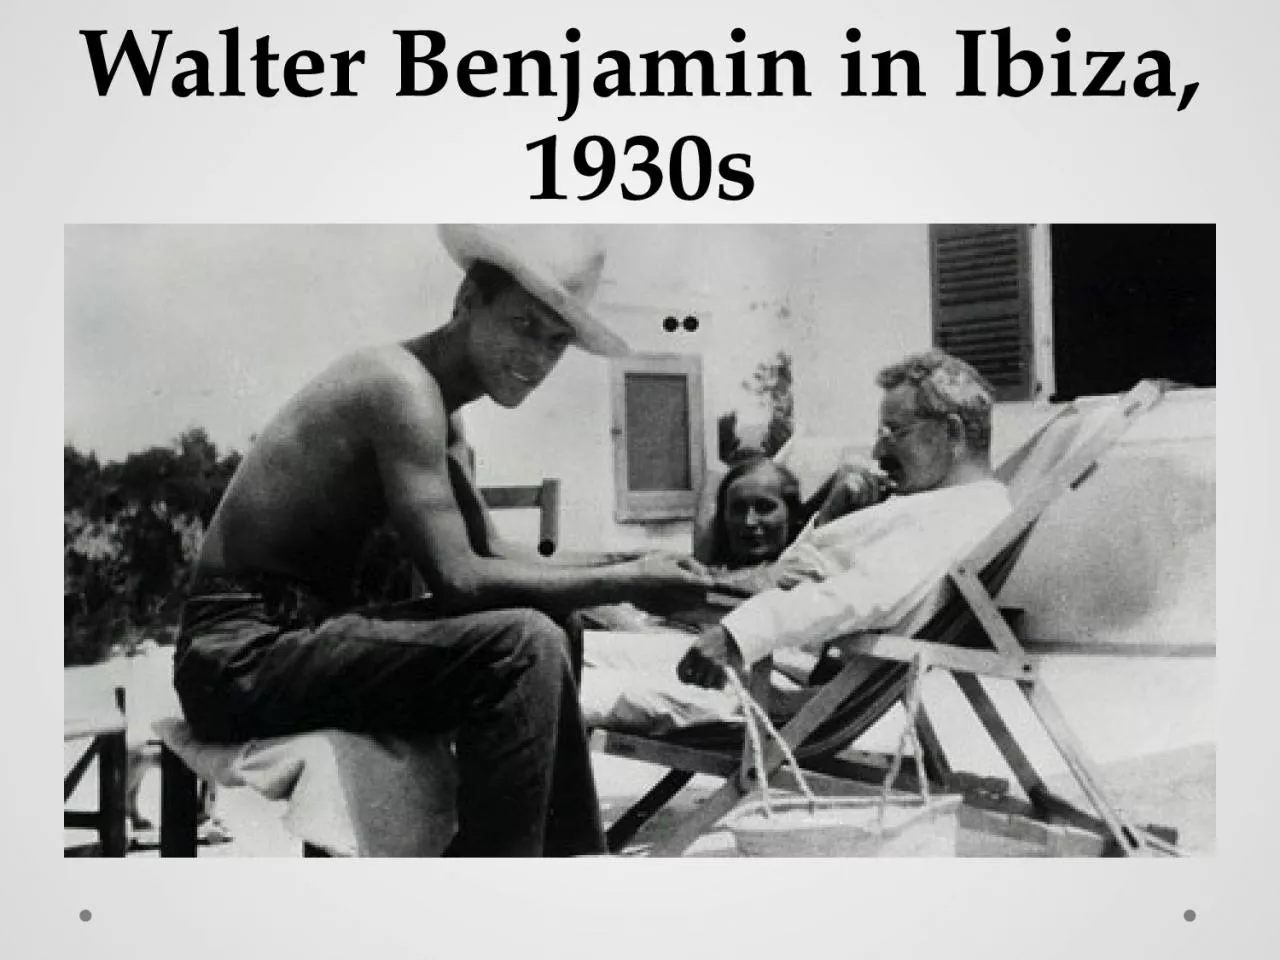 Walter Benjamin in Ibiza, 1930s